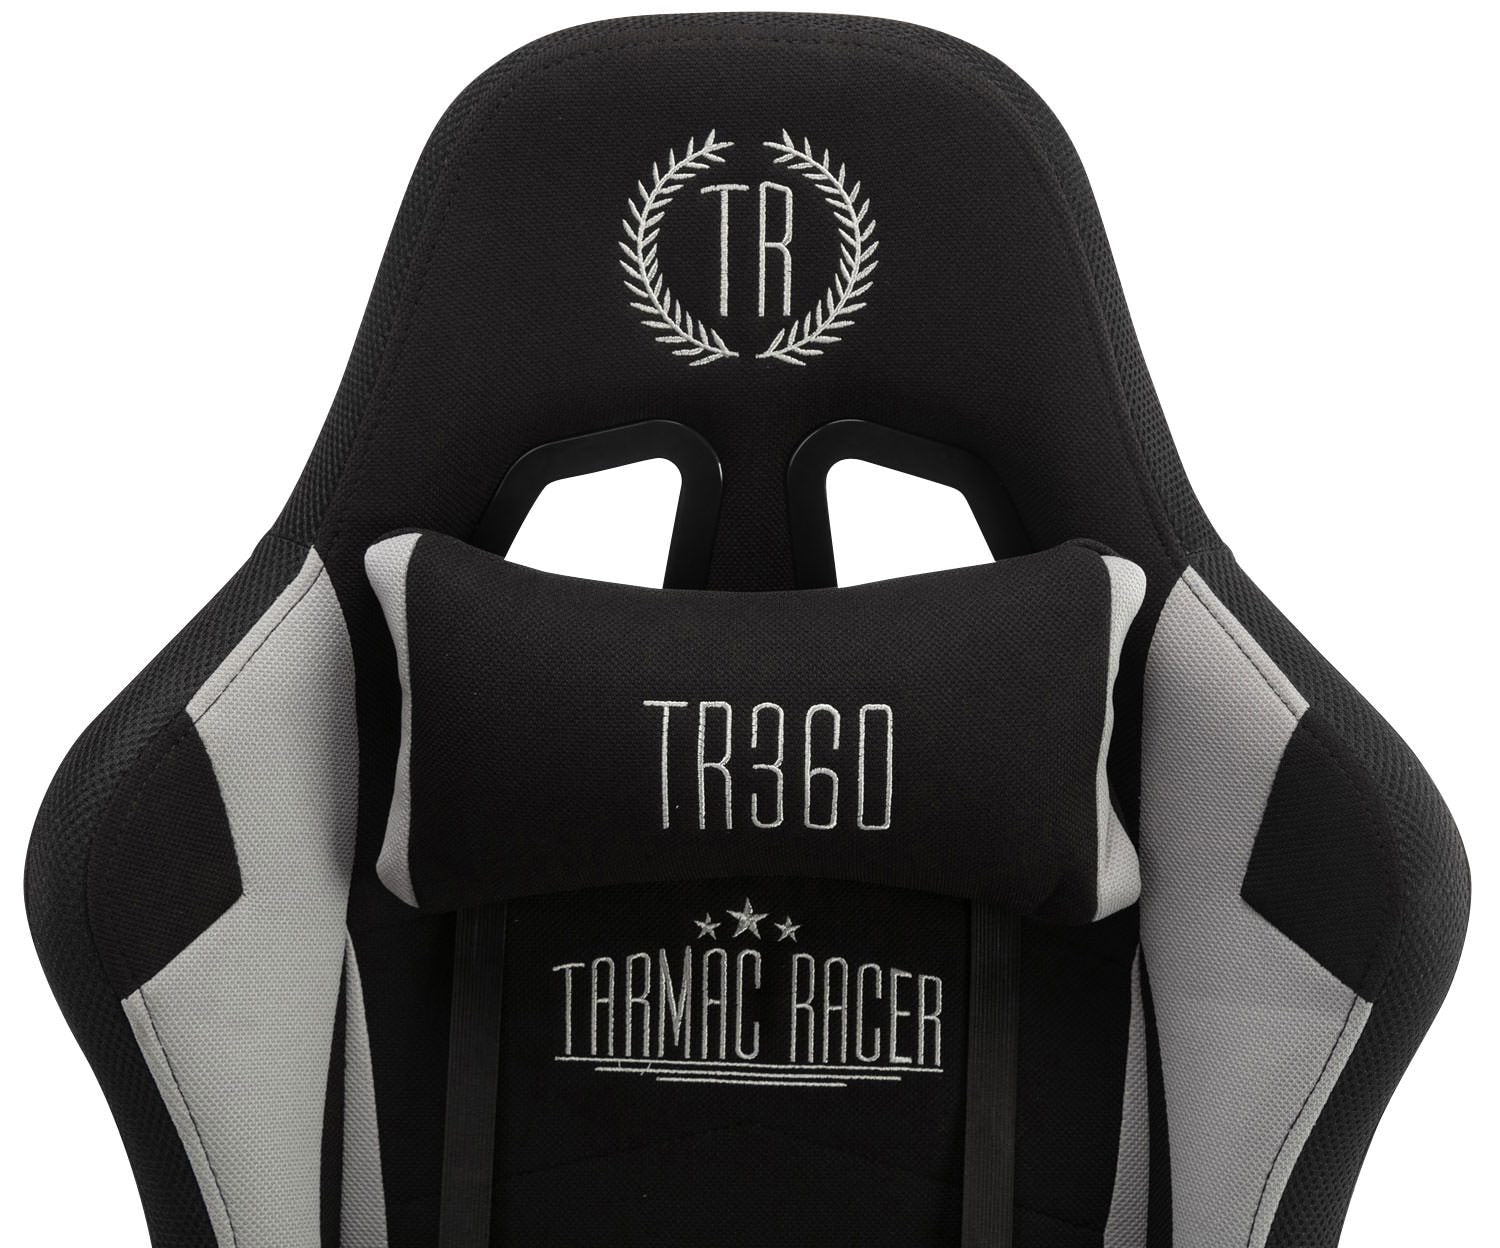 Turbo LED szövet gamer szék lábtartóval